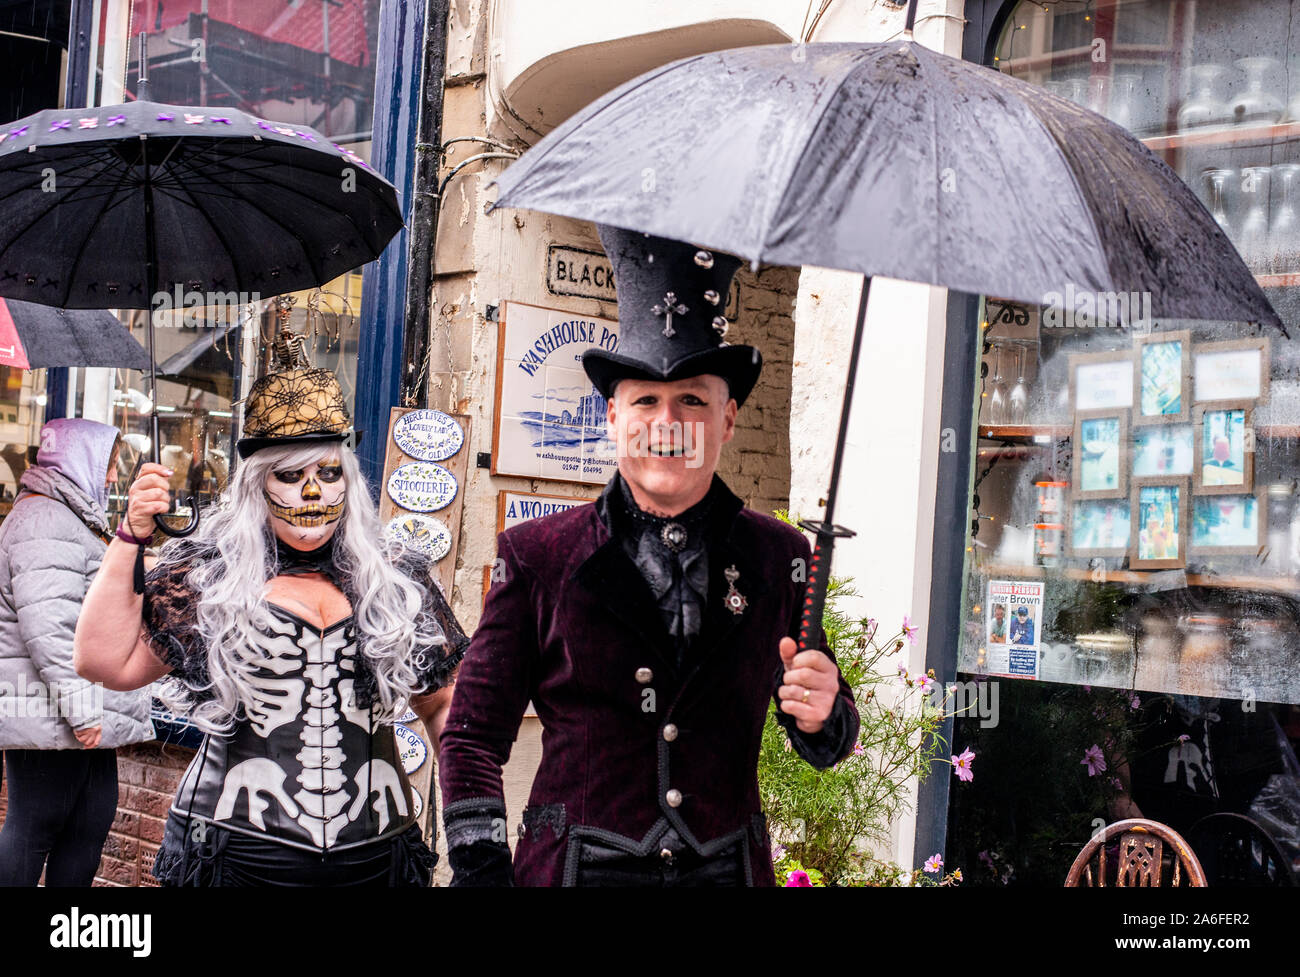 Jolly giovane nei tradizionali costumi di Goth camminando sotto la pioggia, Whitby Goth Festival Weekend, Whitby, North Yorkshire, Regno Unito, 26 Ottobre 2019 Foto Stock